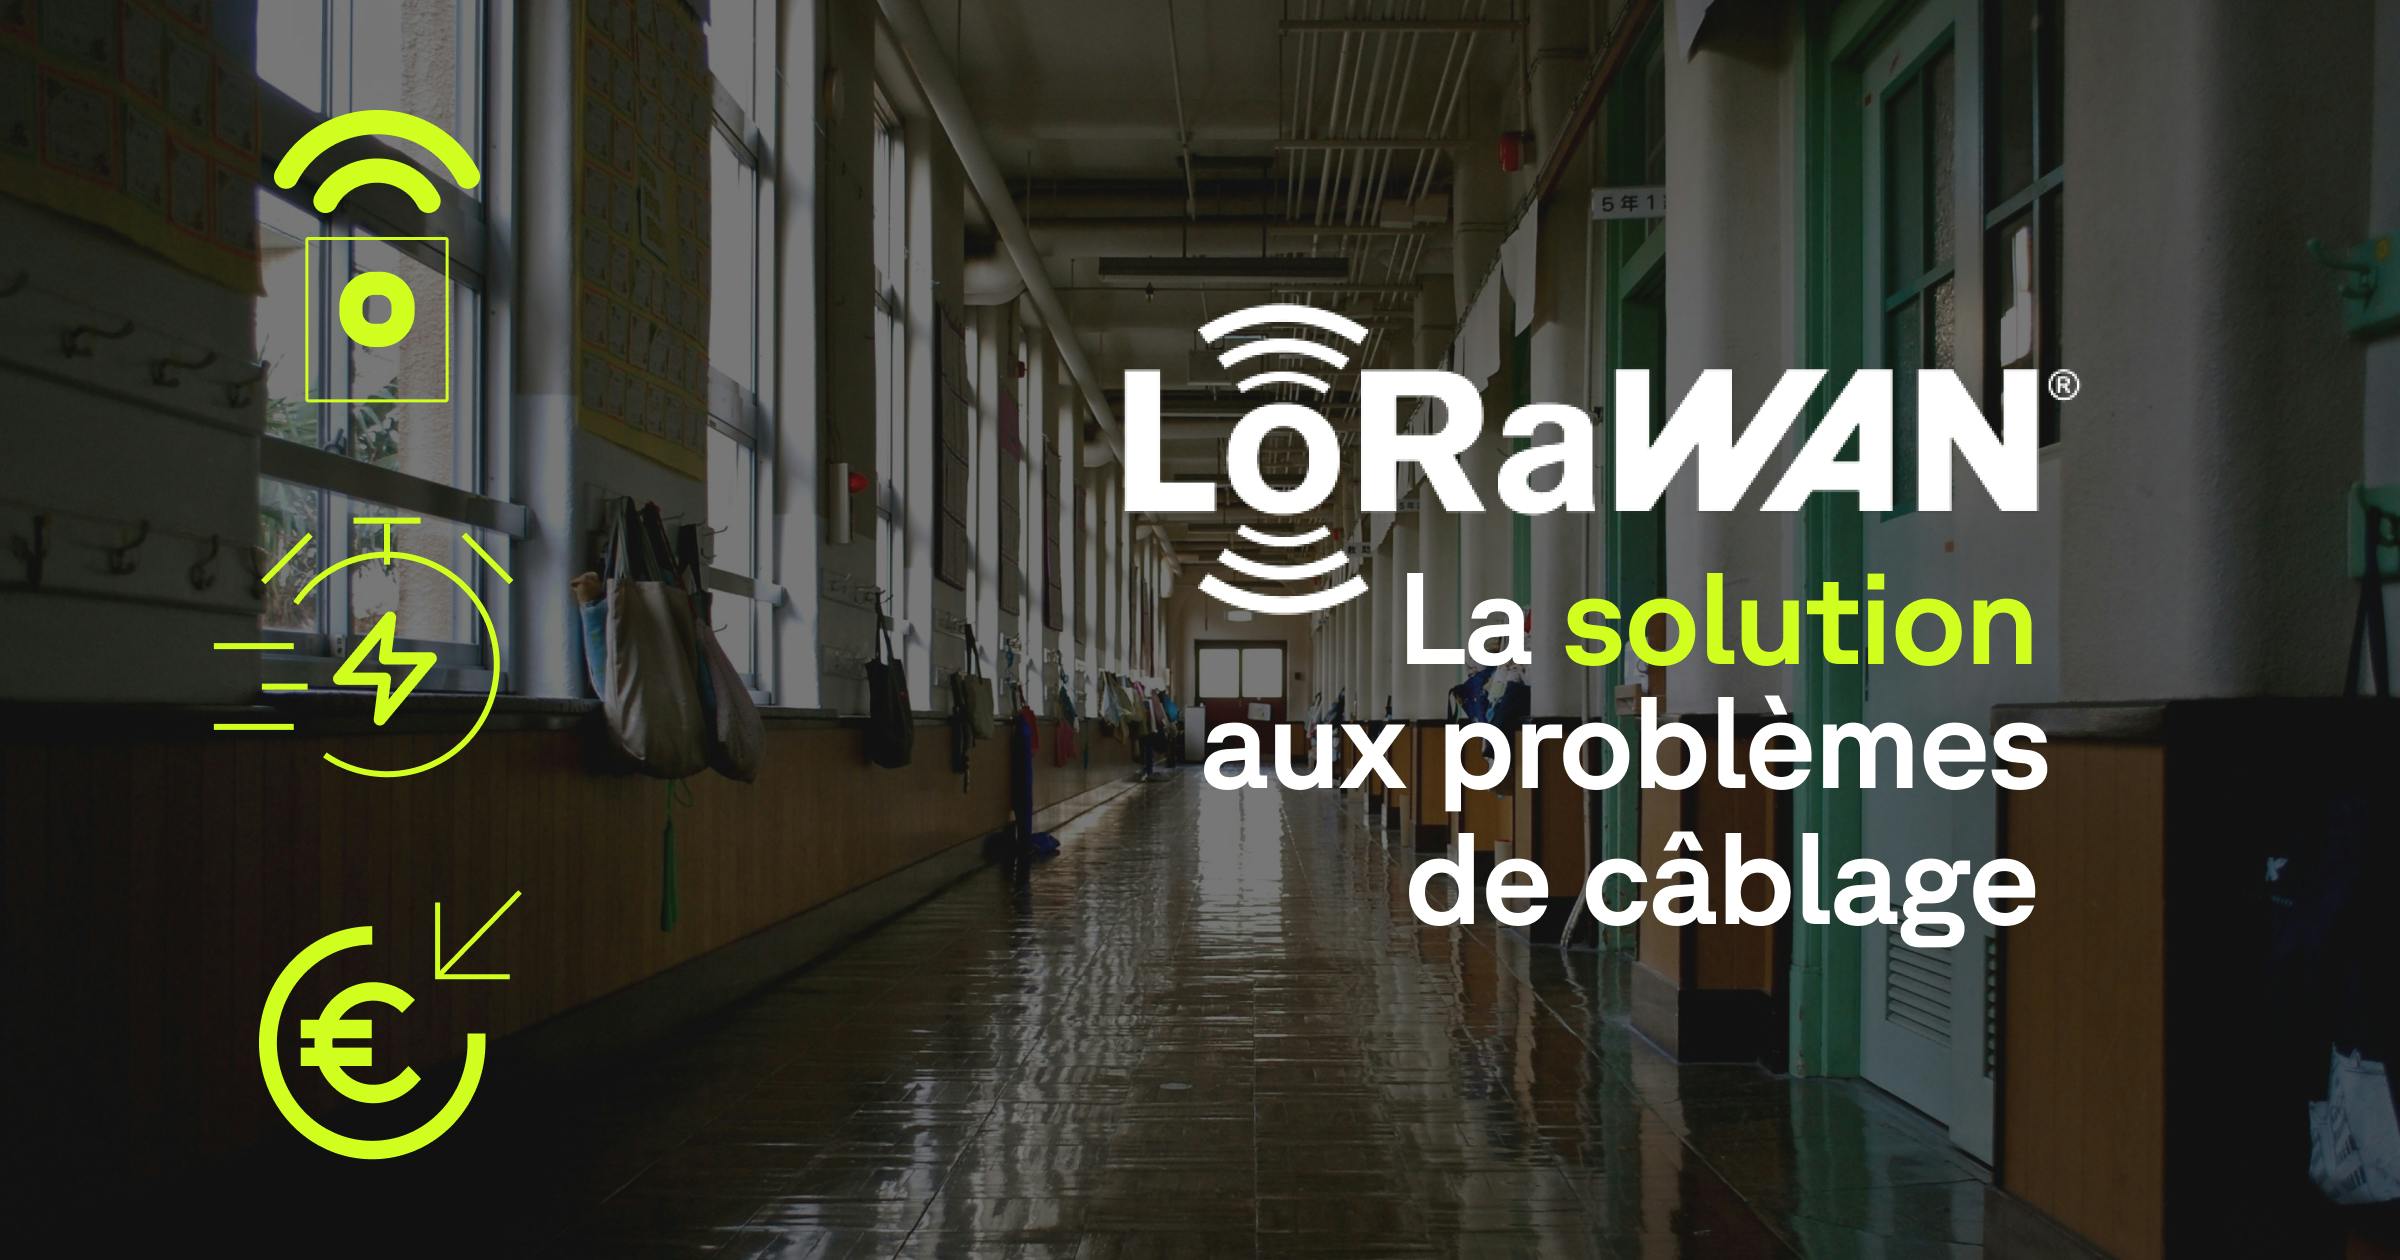 Supervisez les équipements techniques d’un bâtiment grâce au LoRaWAN : Une solution aux problèmes de câblage